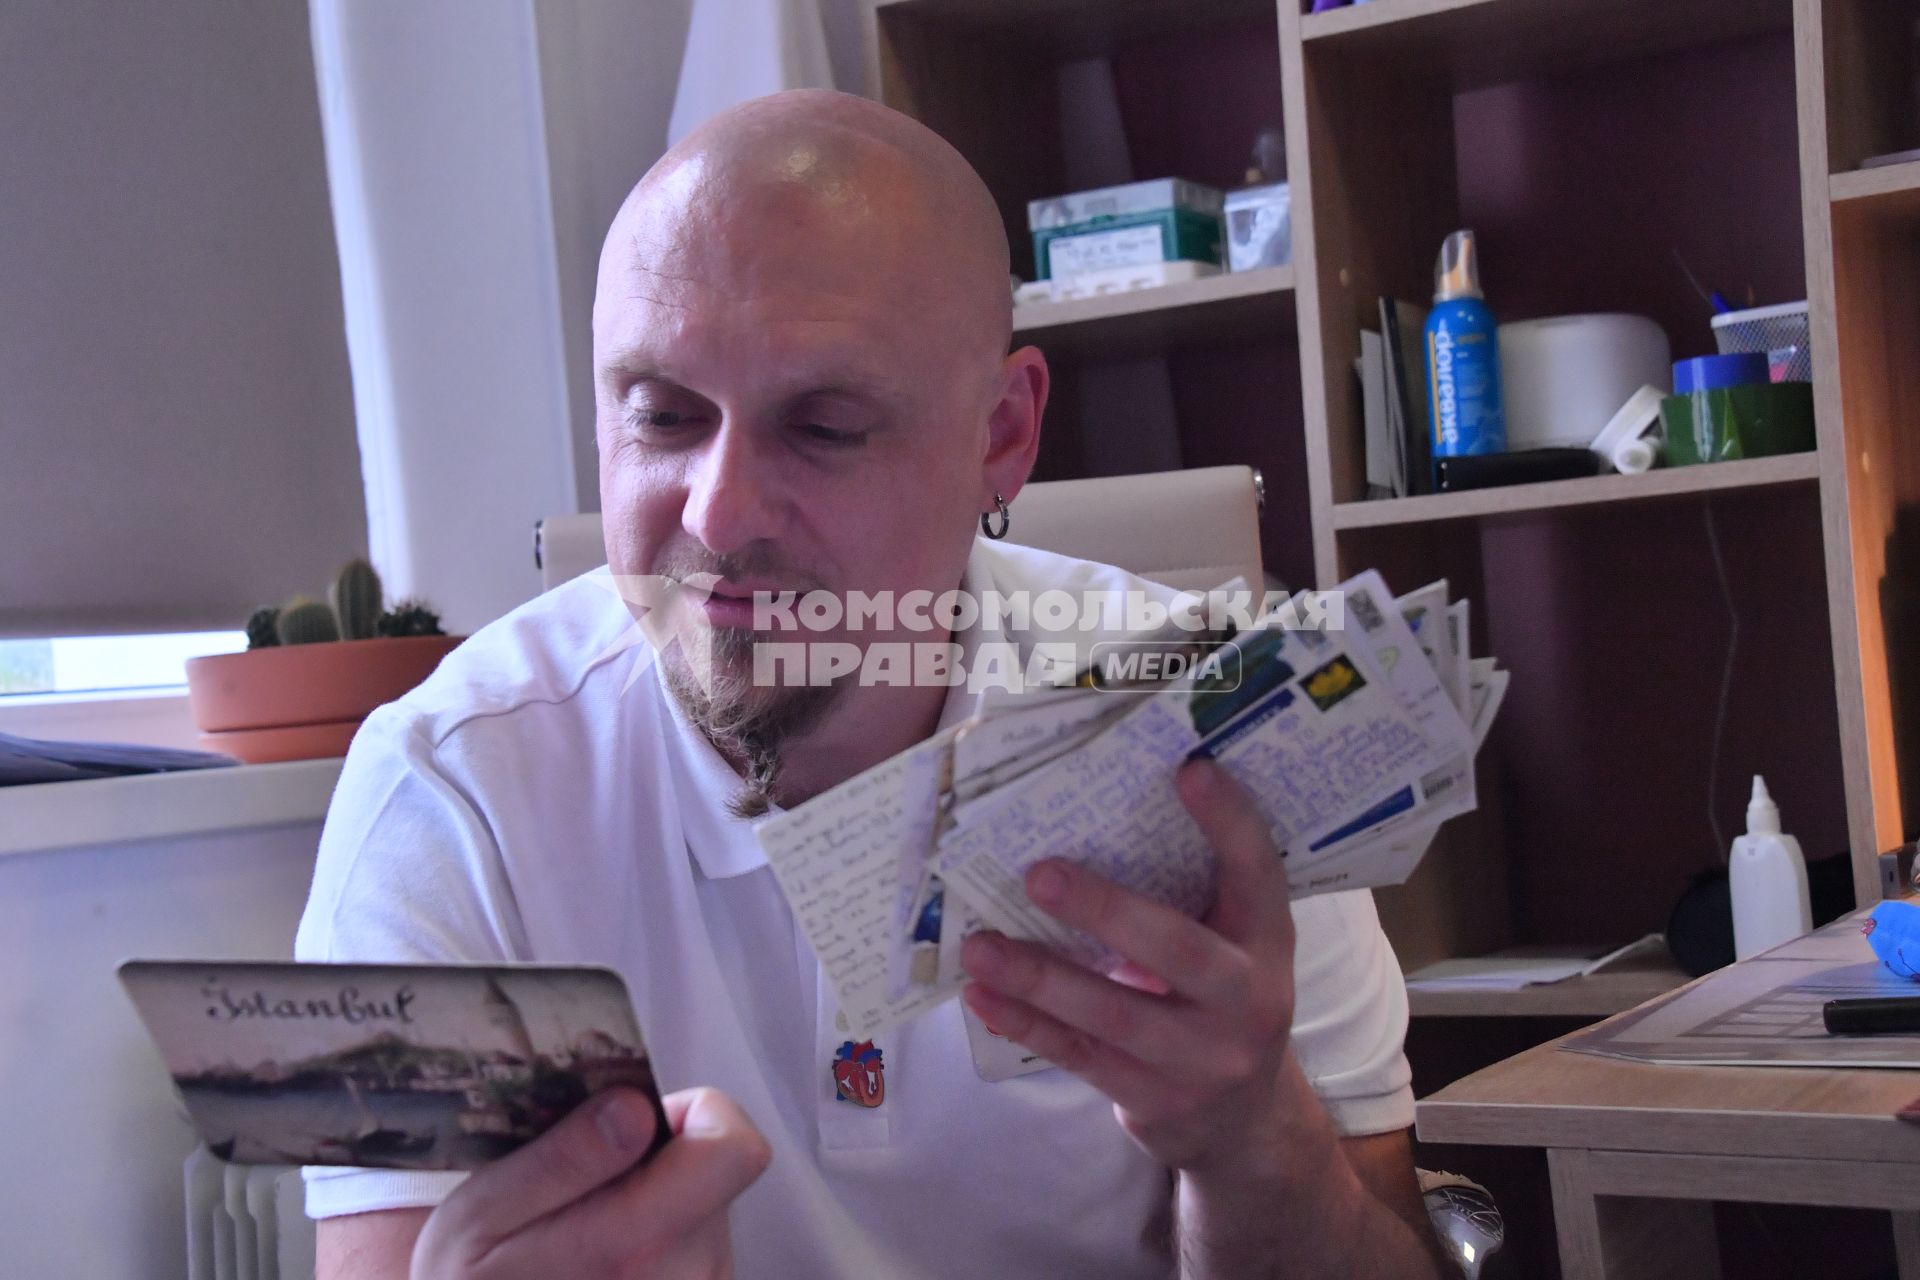 Московская область, г.Балашиха. Заведующий отделением реанимации новорожденных Максим Кондратьев спасает детей и обменивается открытками с людьми по всему миру.